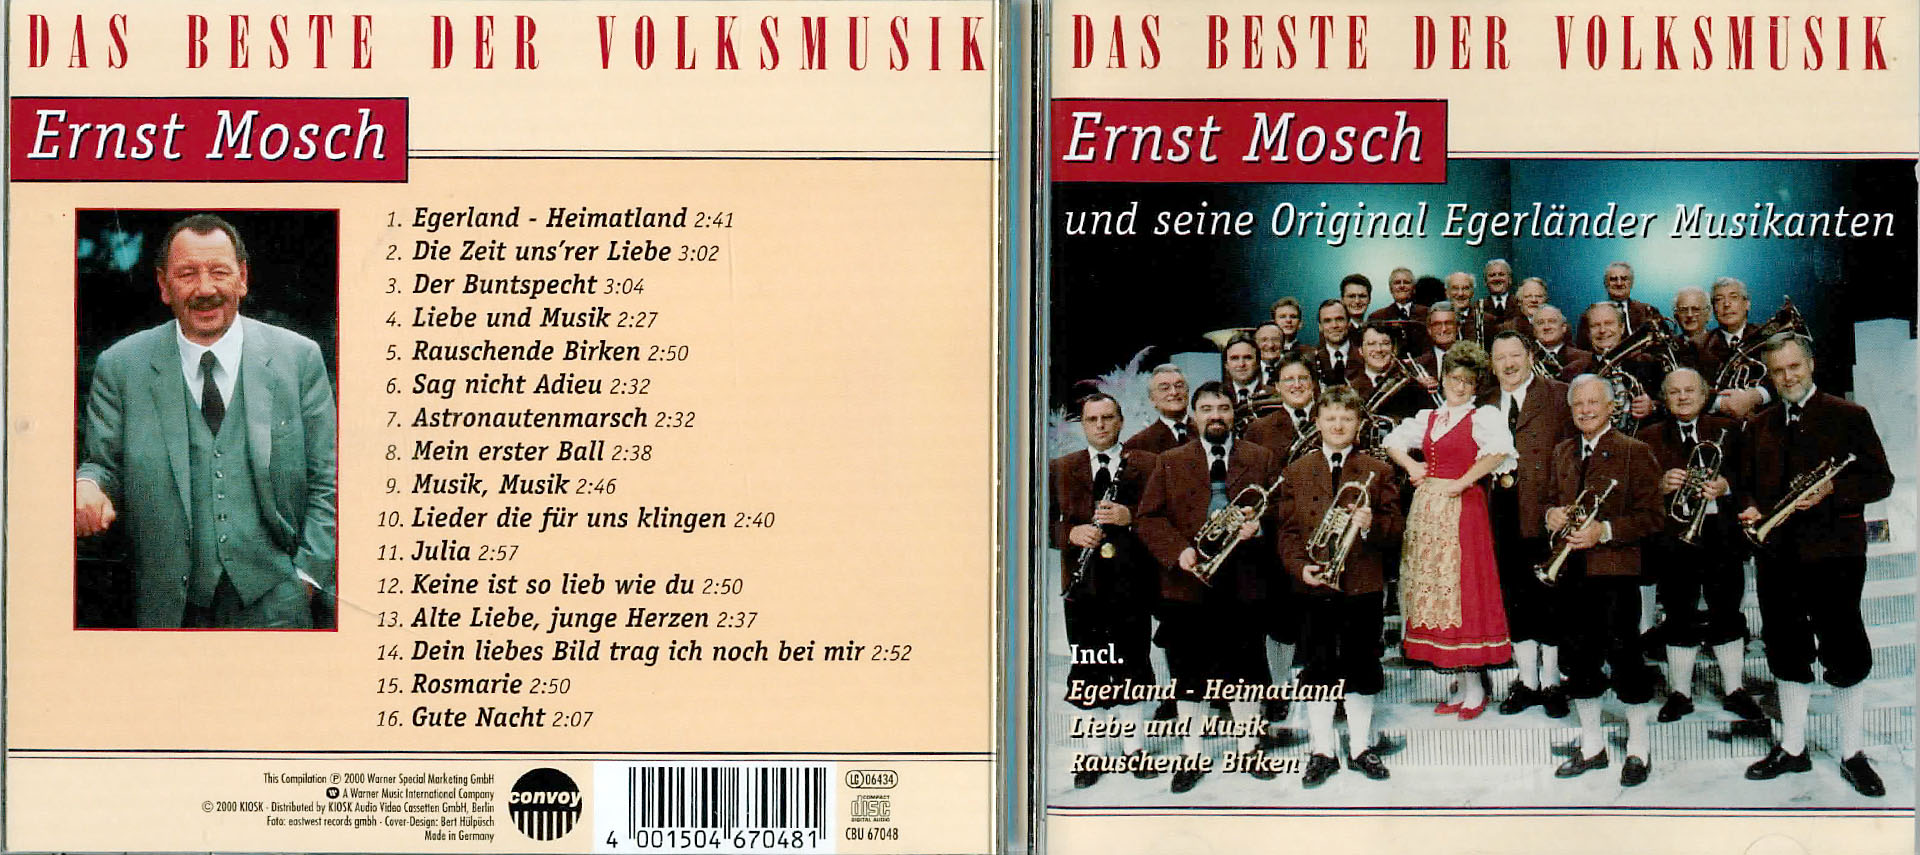 Das Beste der Volksmusik - Ernst Mosch und seine Original Egerländer Musikanten